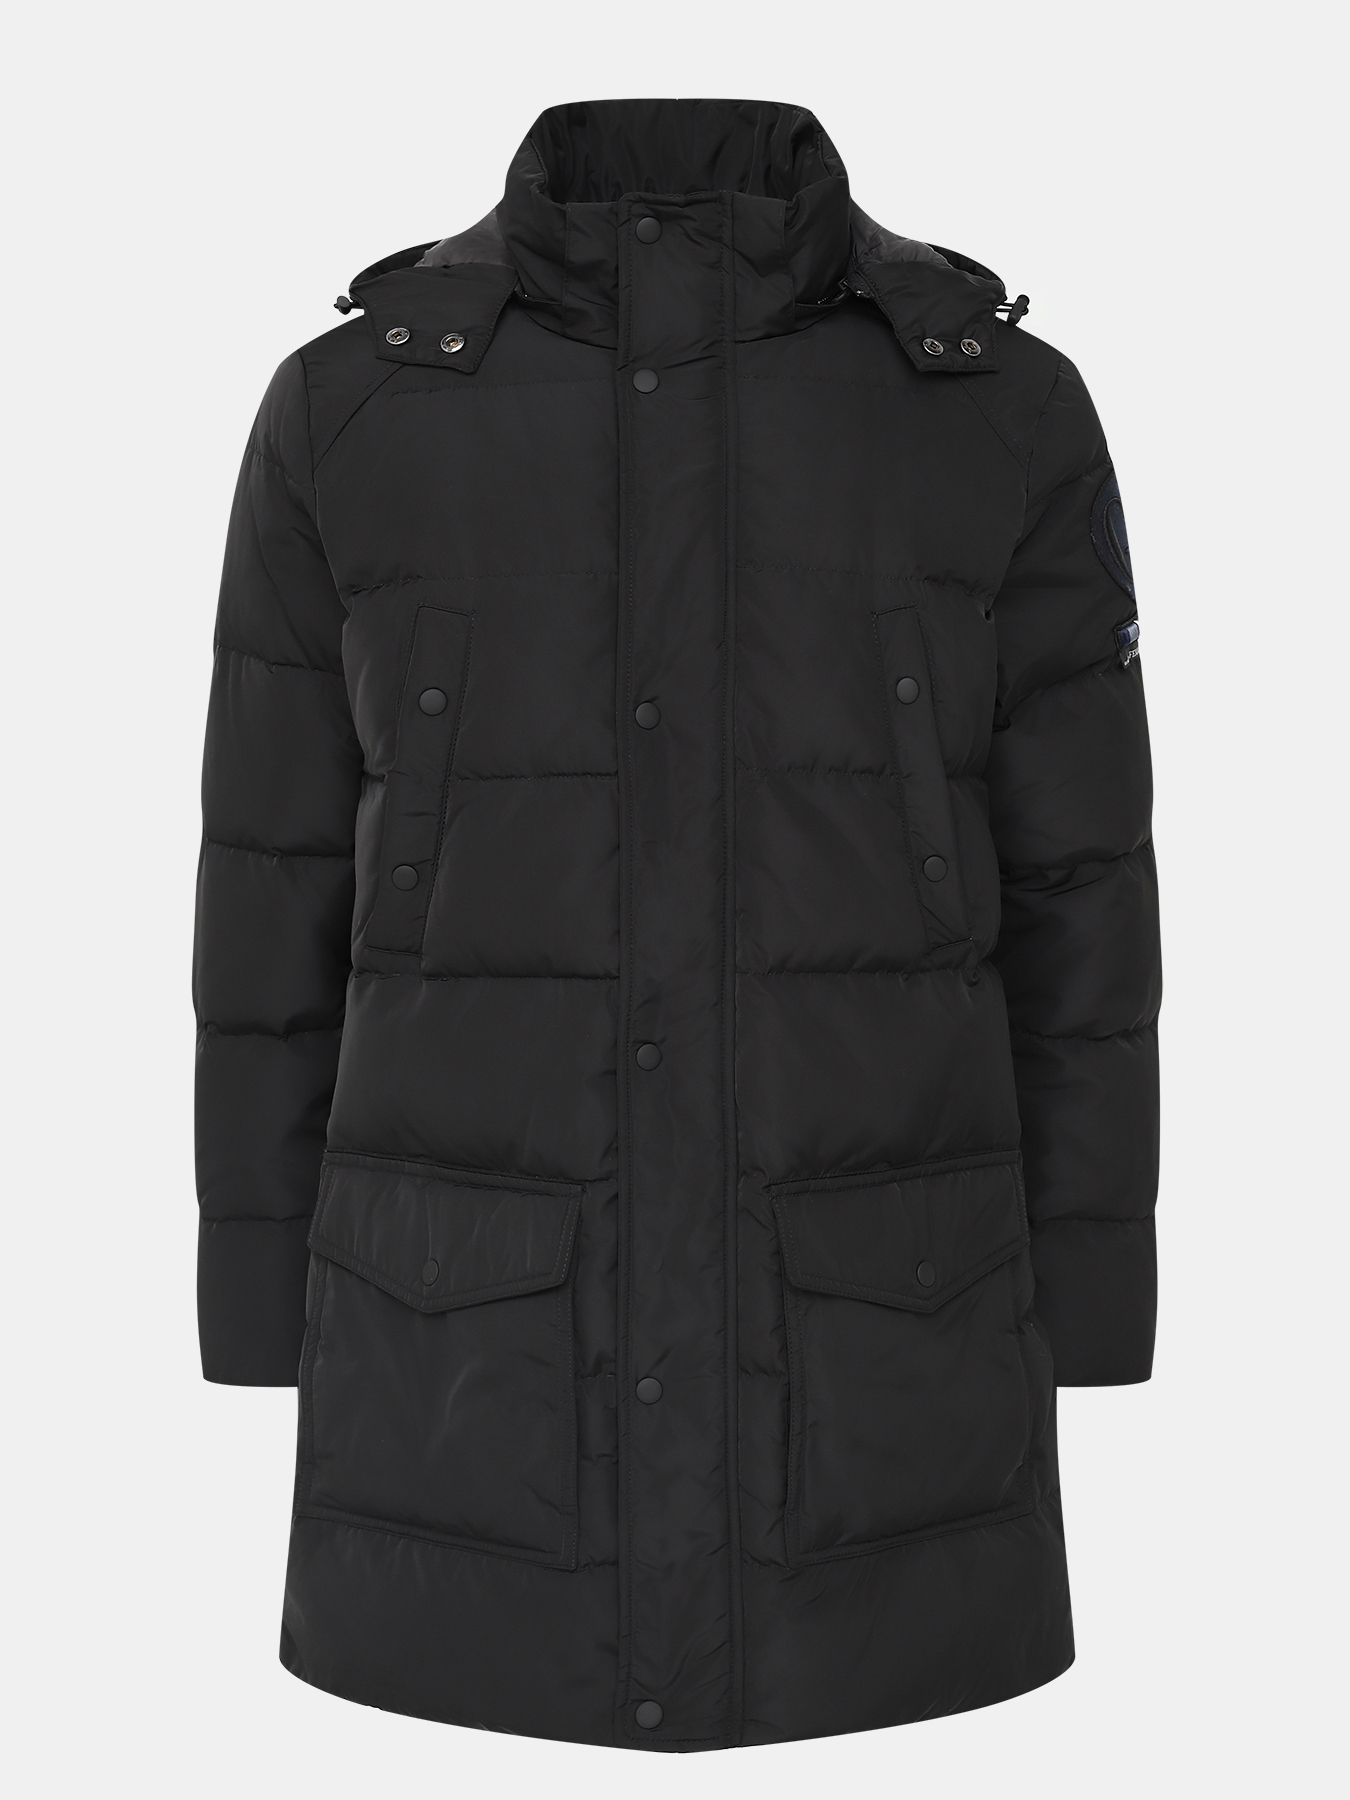 Удлиненная куртка Gianfranco Ferre 386575-045, цвет черный, размер 52